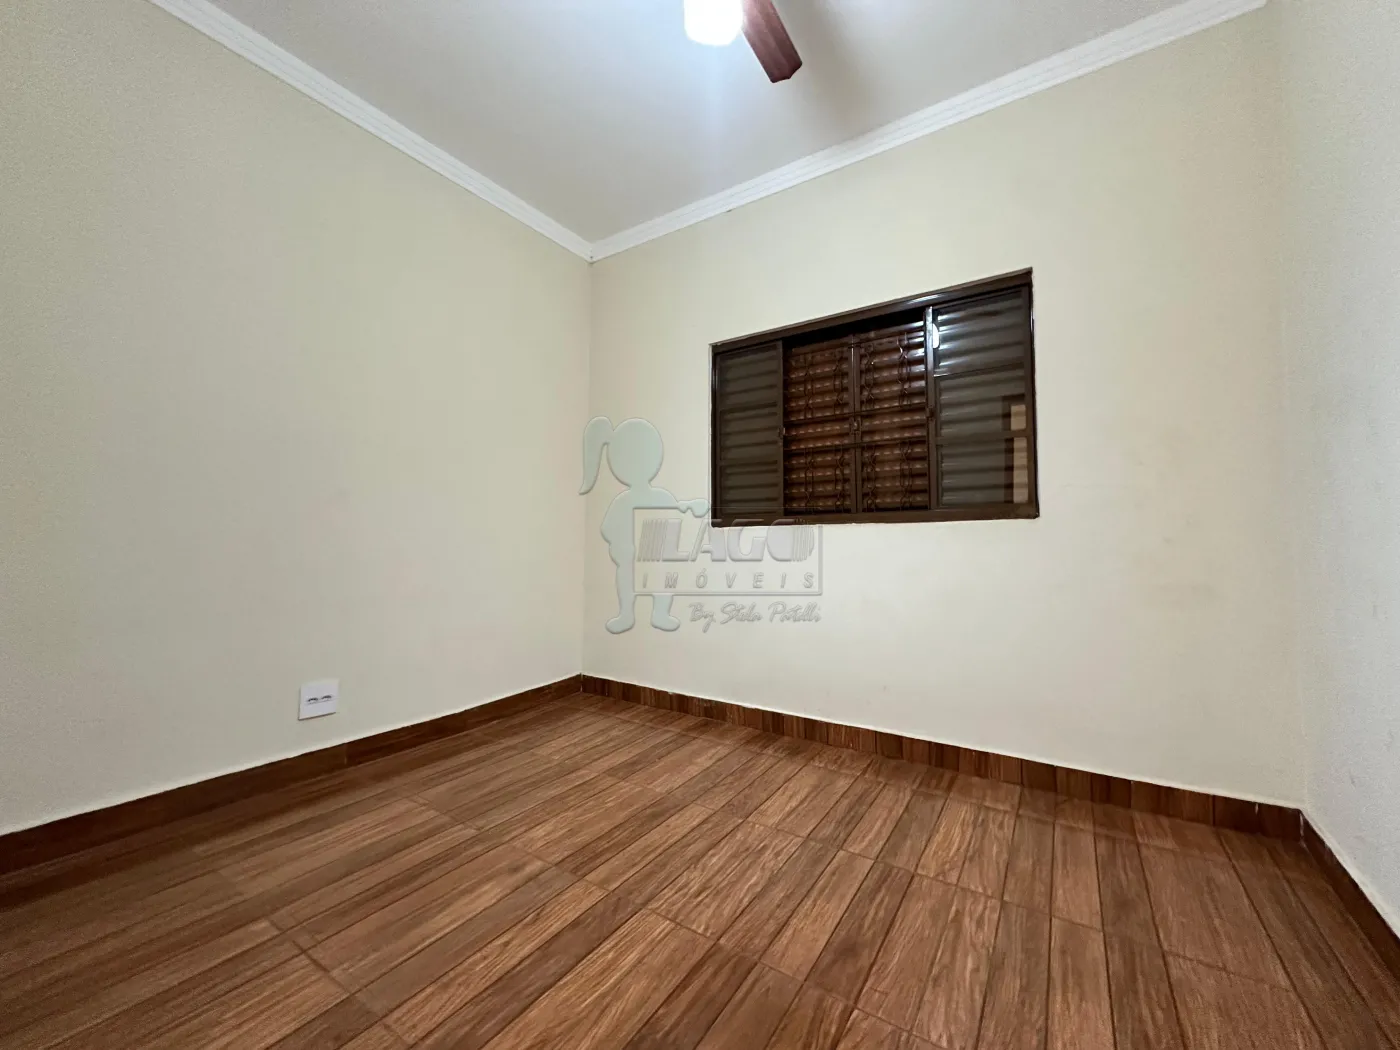 Comprar Casas / Padrão em Ribeirão Preto R$ 480.000,00 - Foto 12